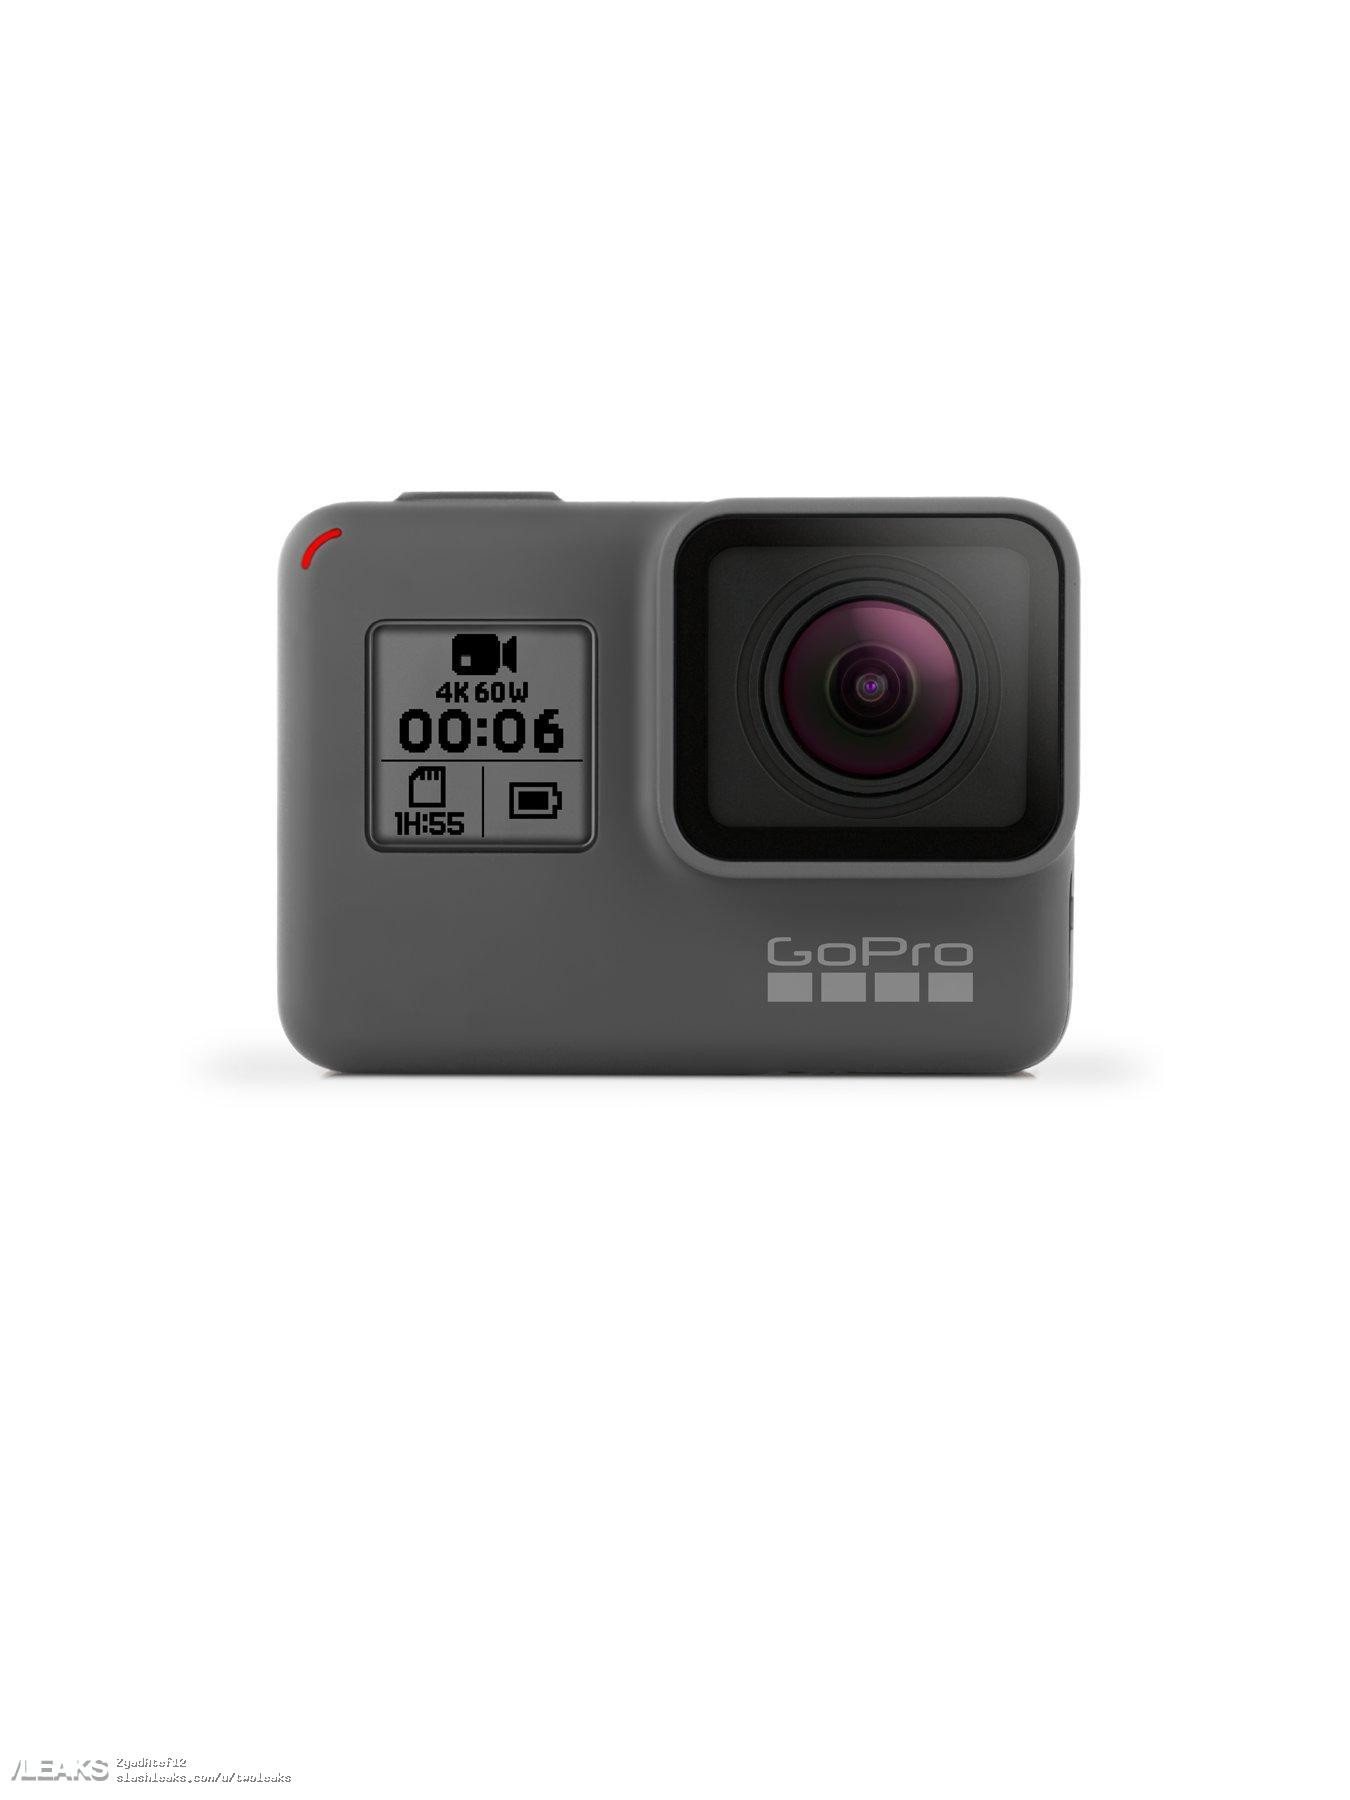 Gopro Hero 6, la cámara de acción mejorada que graba 4K a 60 fps